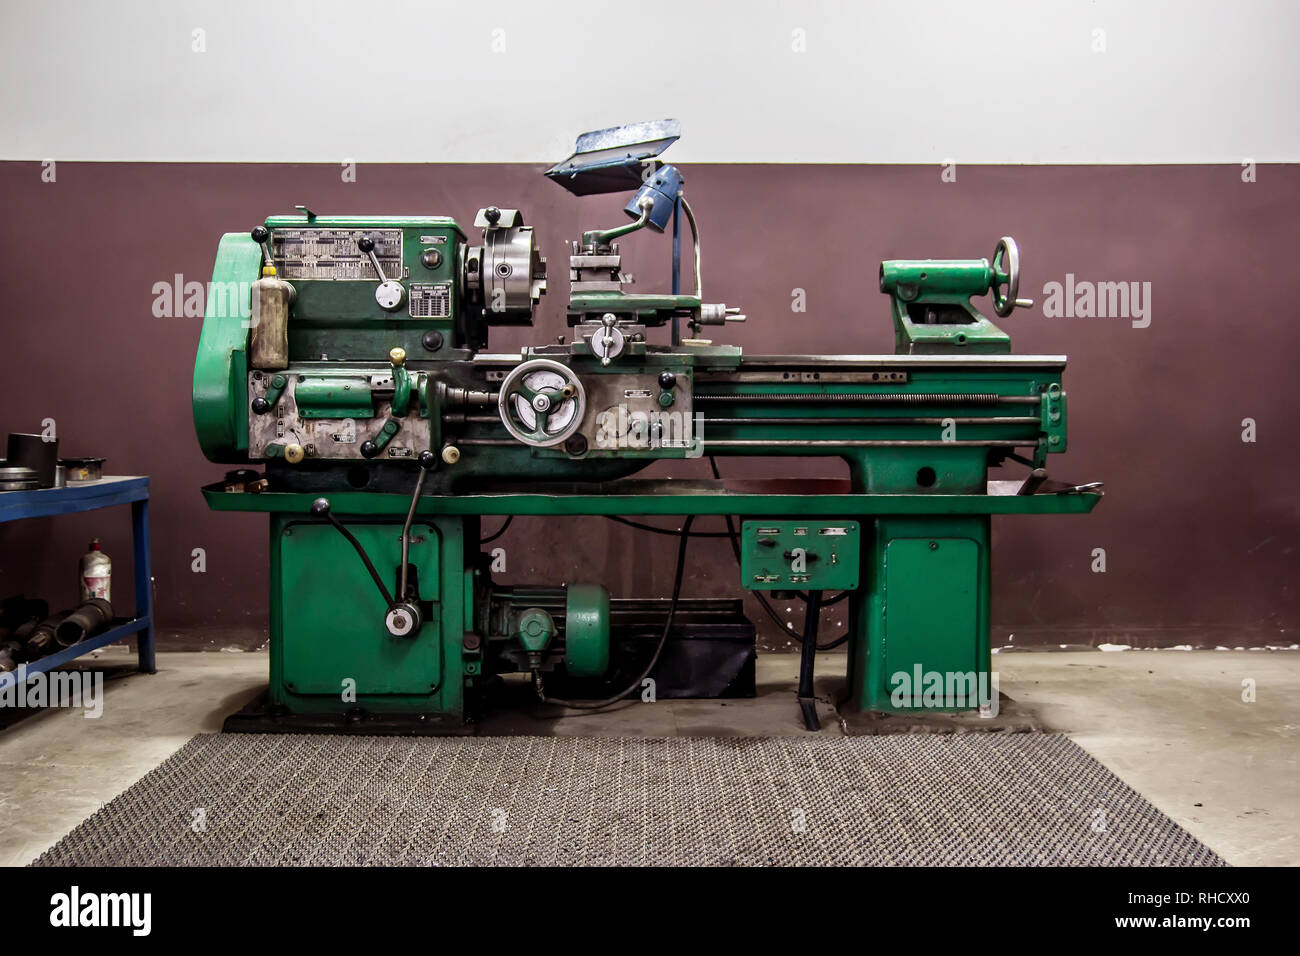 Alte Drehmaschine in der Werkstatt Stockfotografie - Alamy